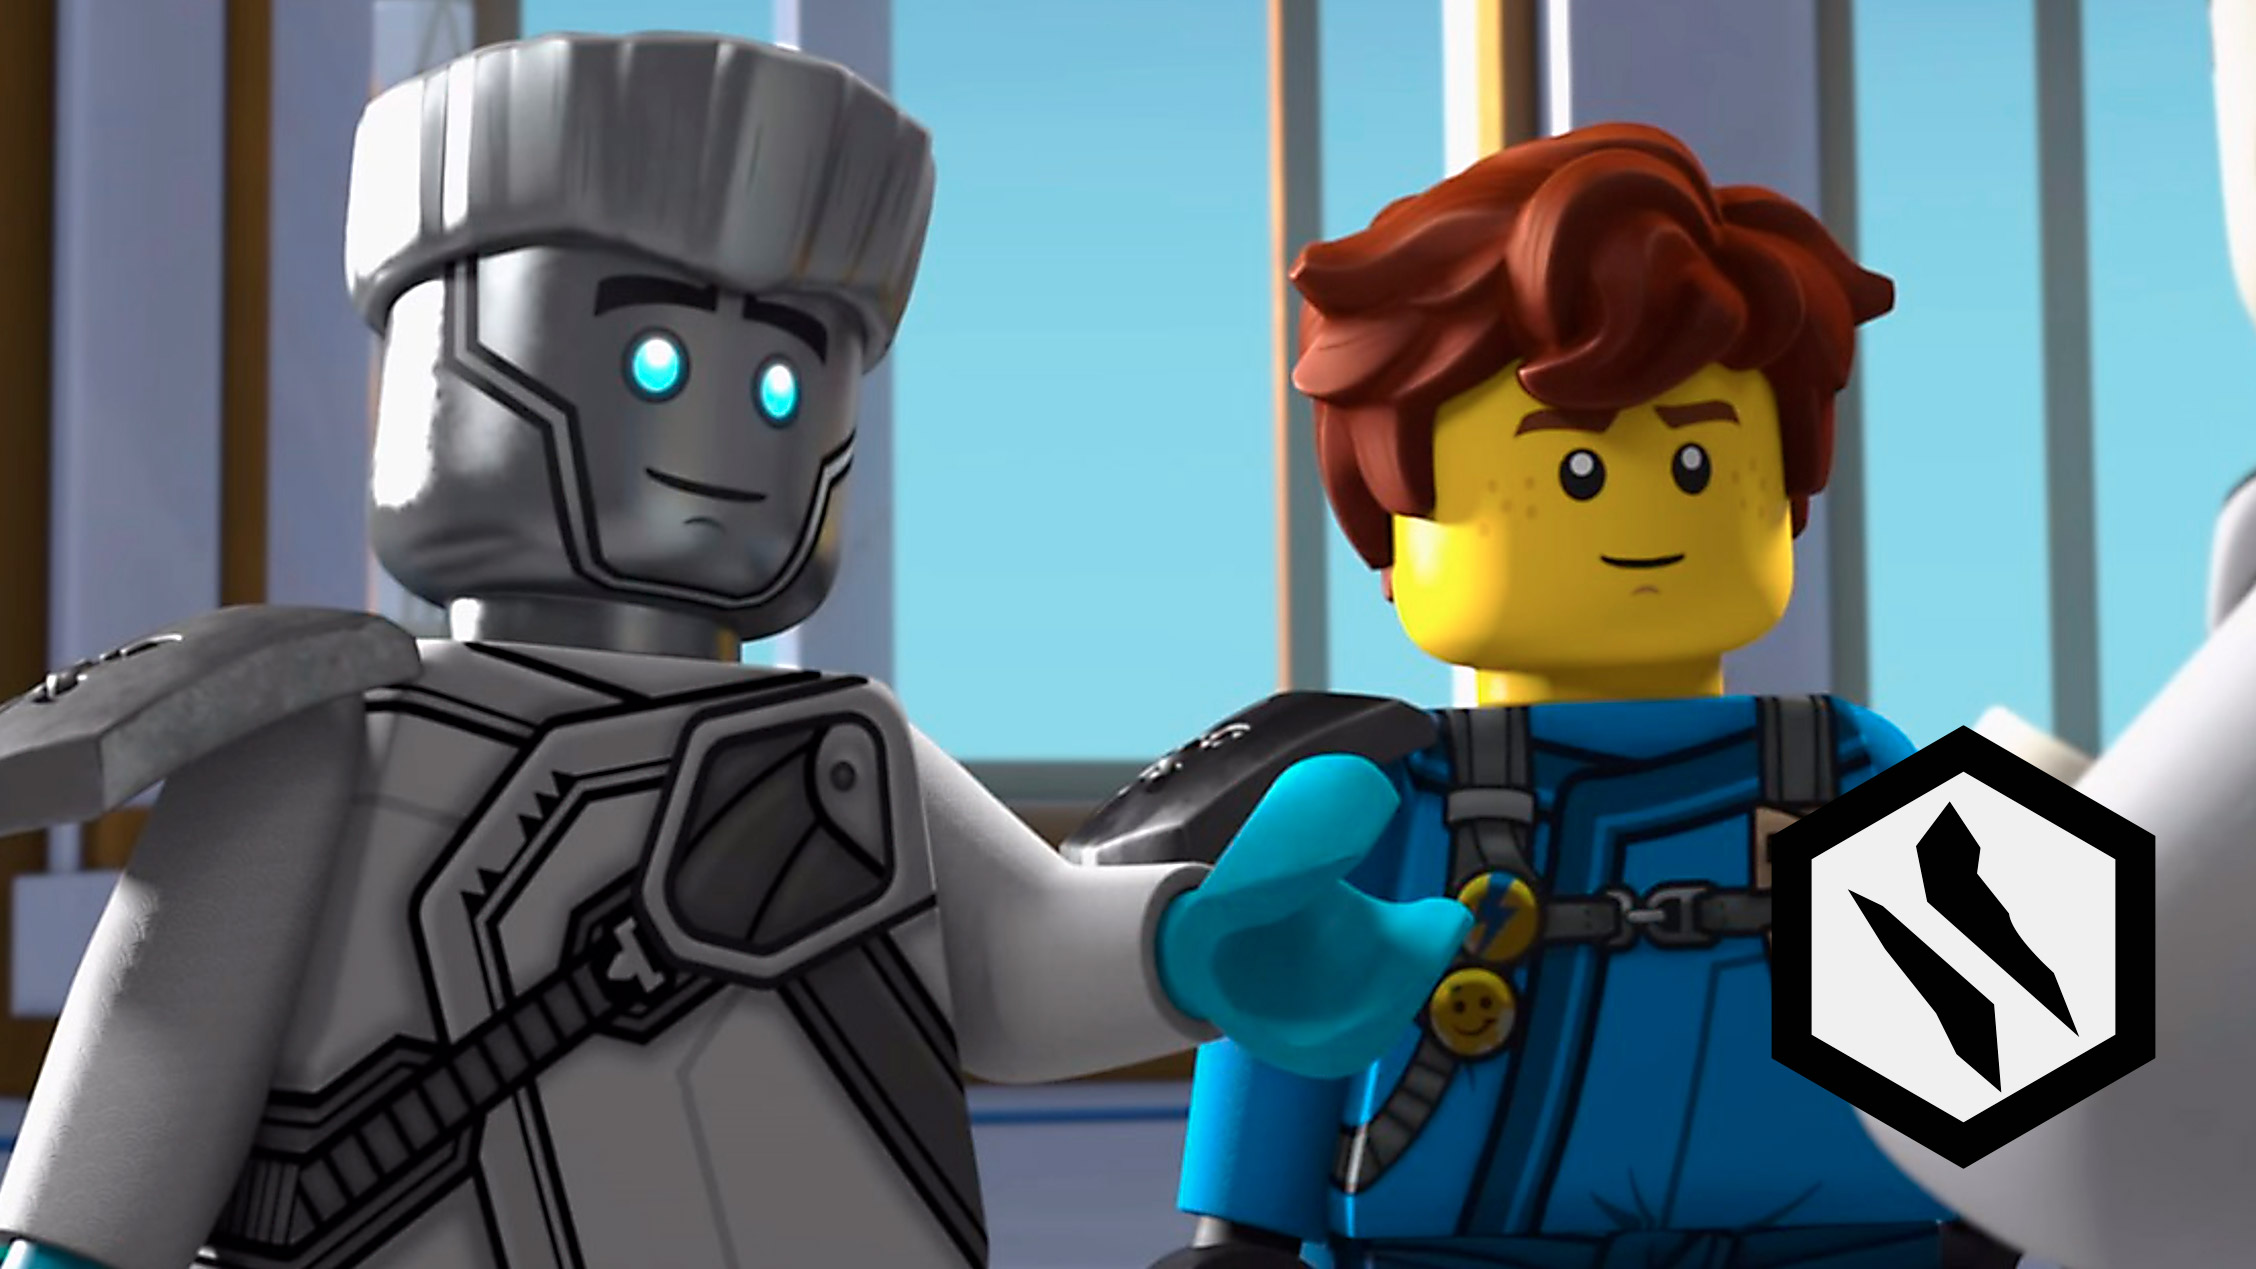 LEGO® NINJAGO® - LEGO.com para crianças